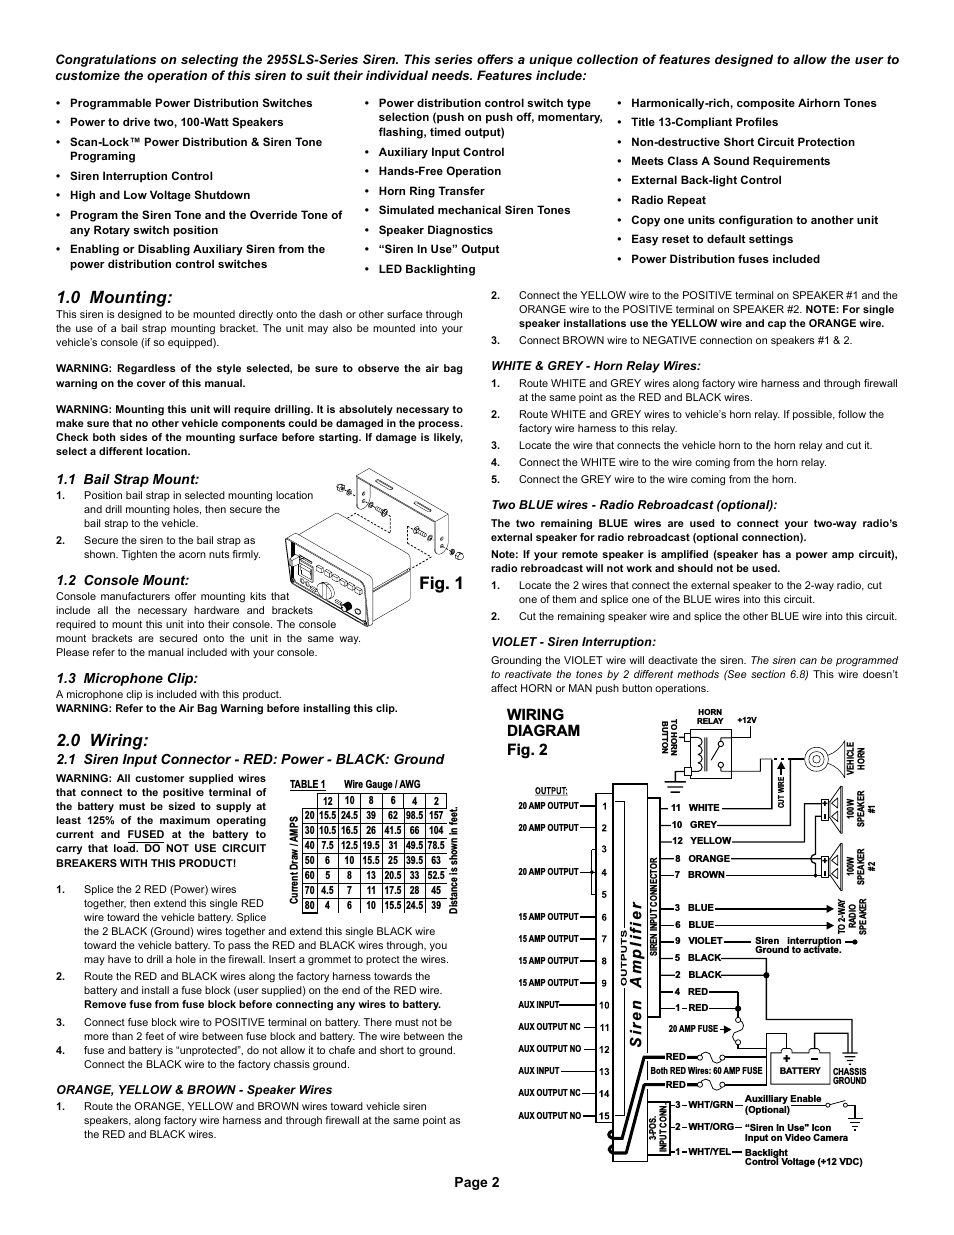 fig 1 1 0 mounting 0 wiring wiring diagram whelen 295slsa6 user whelen wiring diagram siren whelen wiring diagram